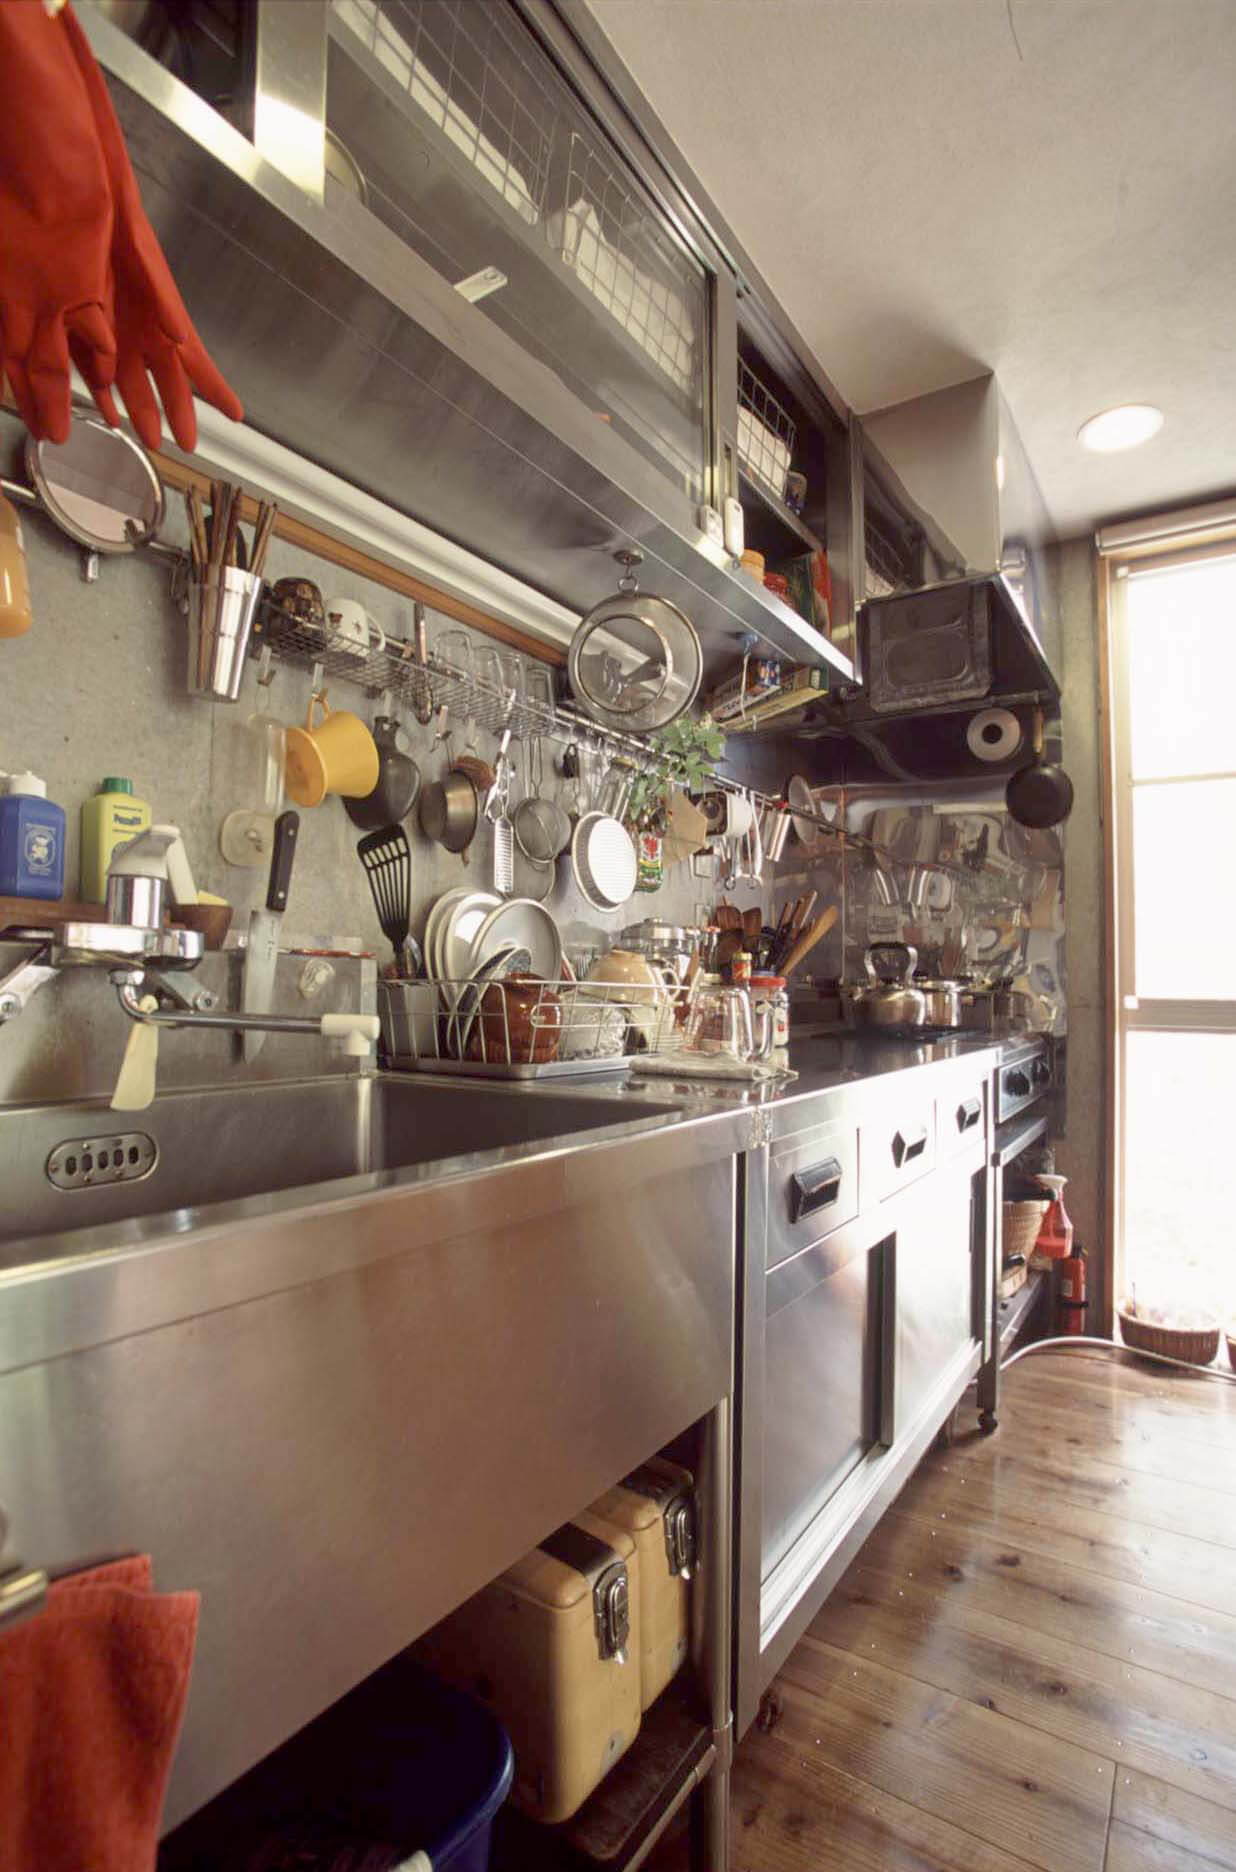 プロ仕様の厨房用品のリサイクル店で集めた調理器具や食器がたくさん置かれたステンレスの調理スペース